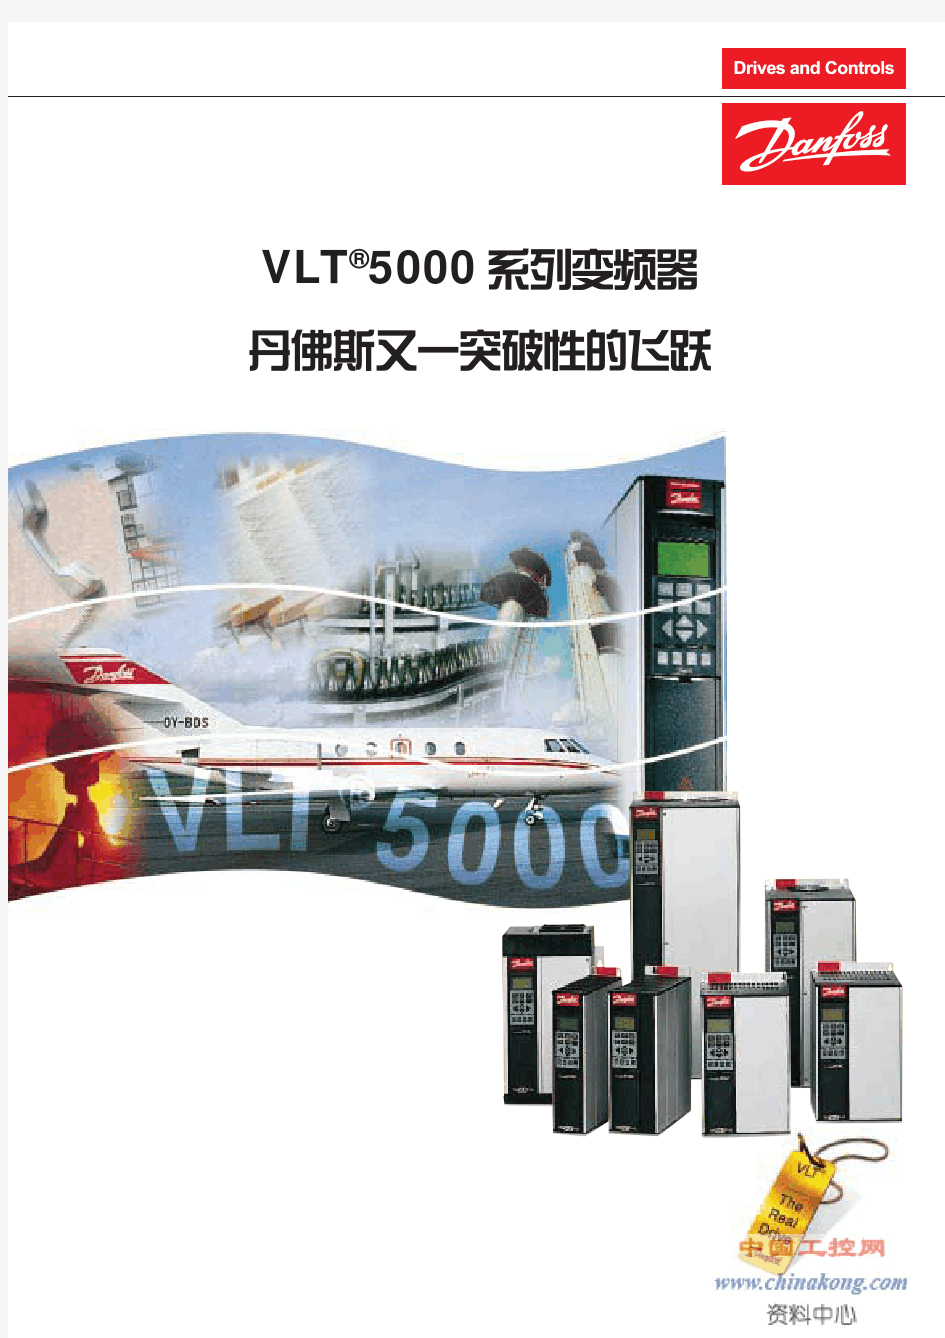 丹佛斯(danfoss)VLT5000通用型系列变频器选型样本(中文)